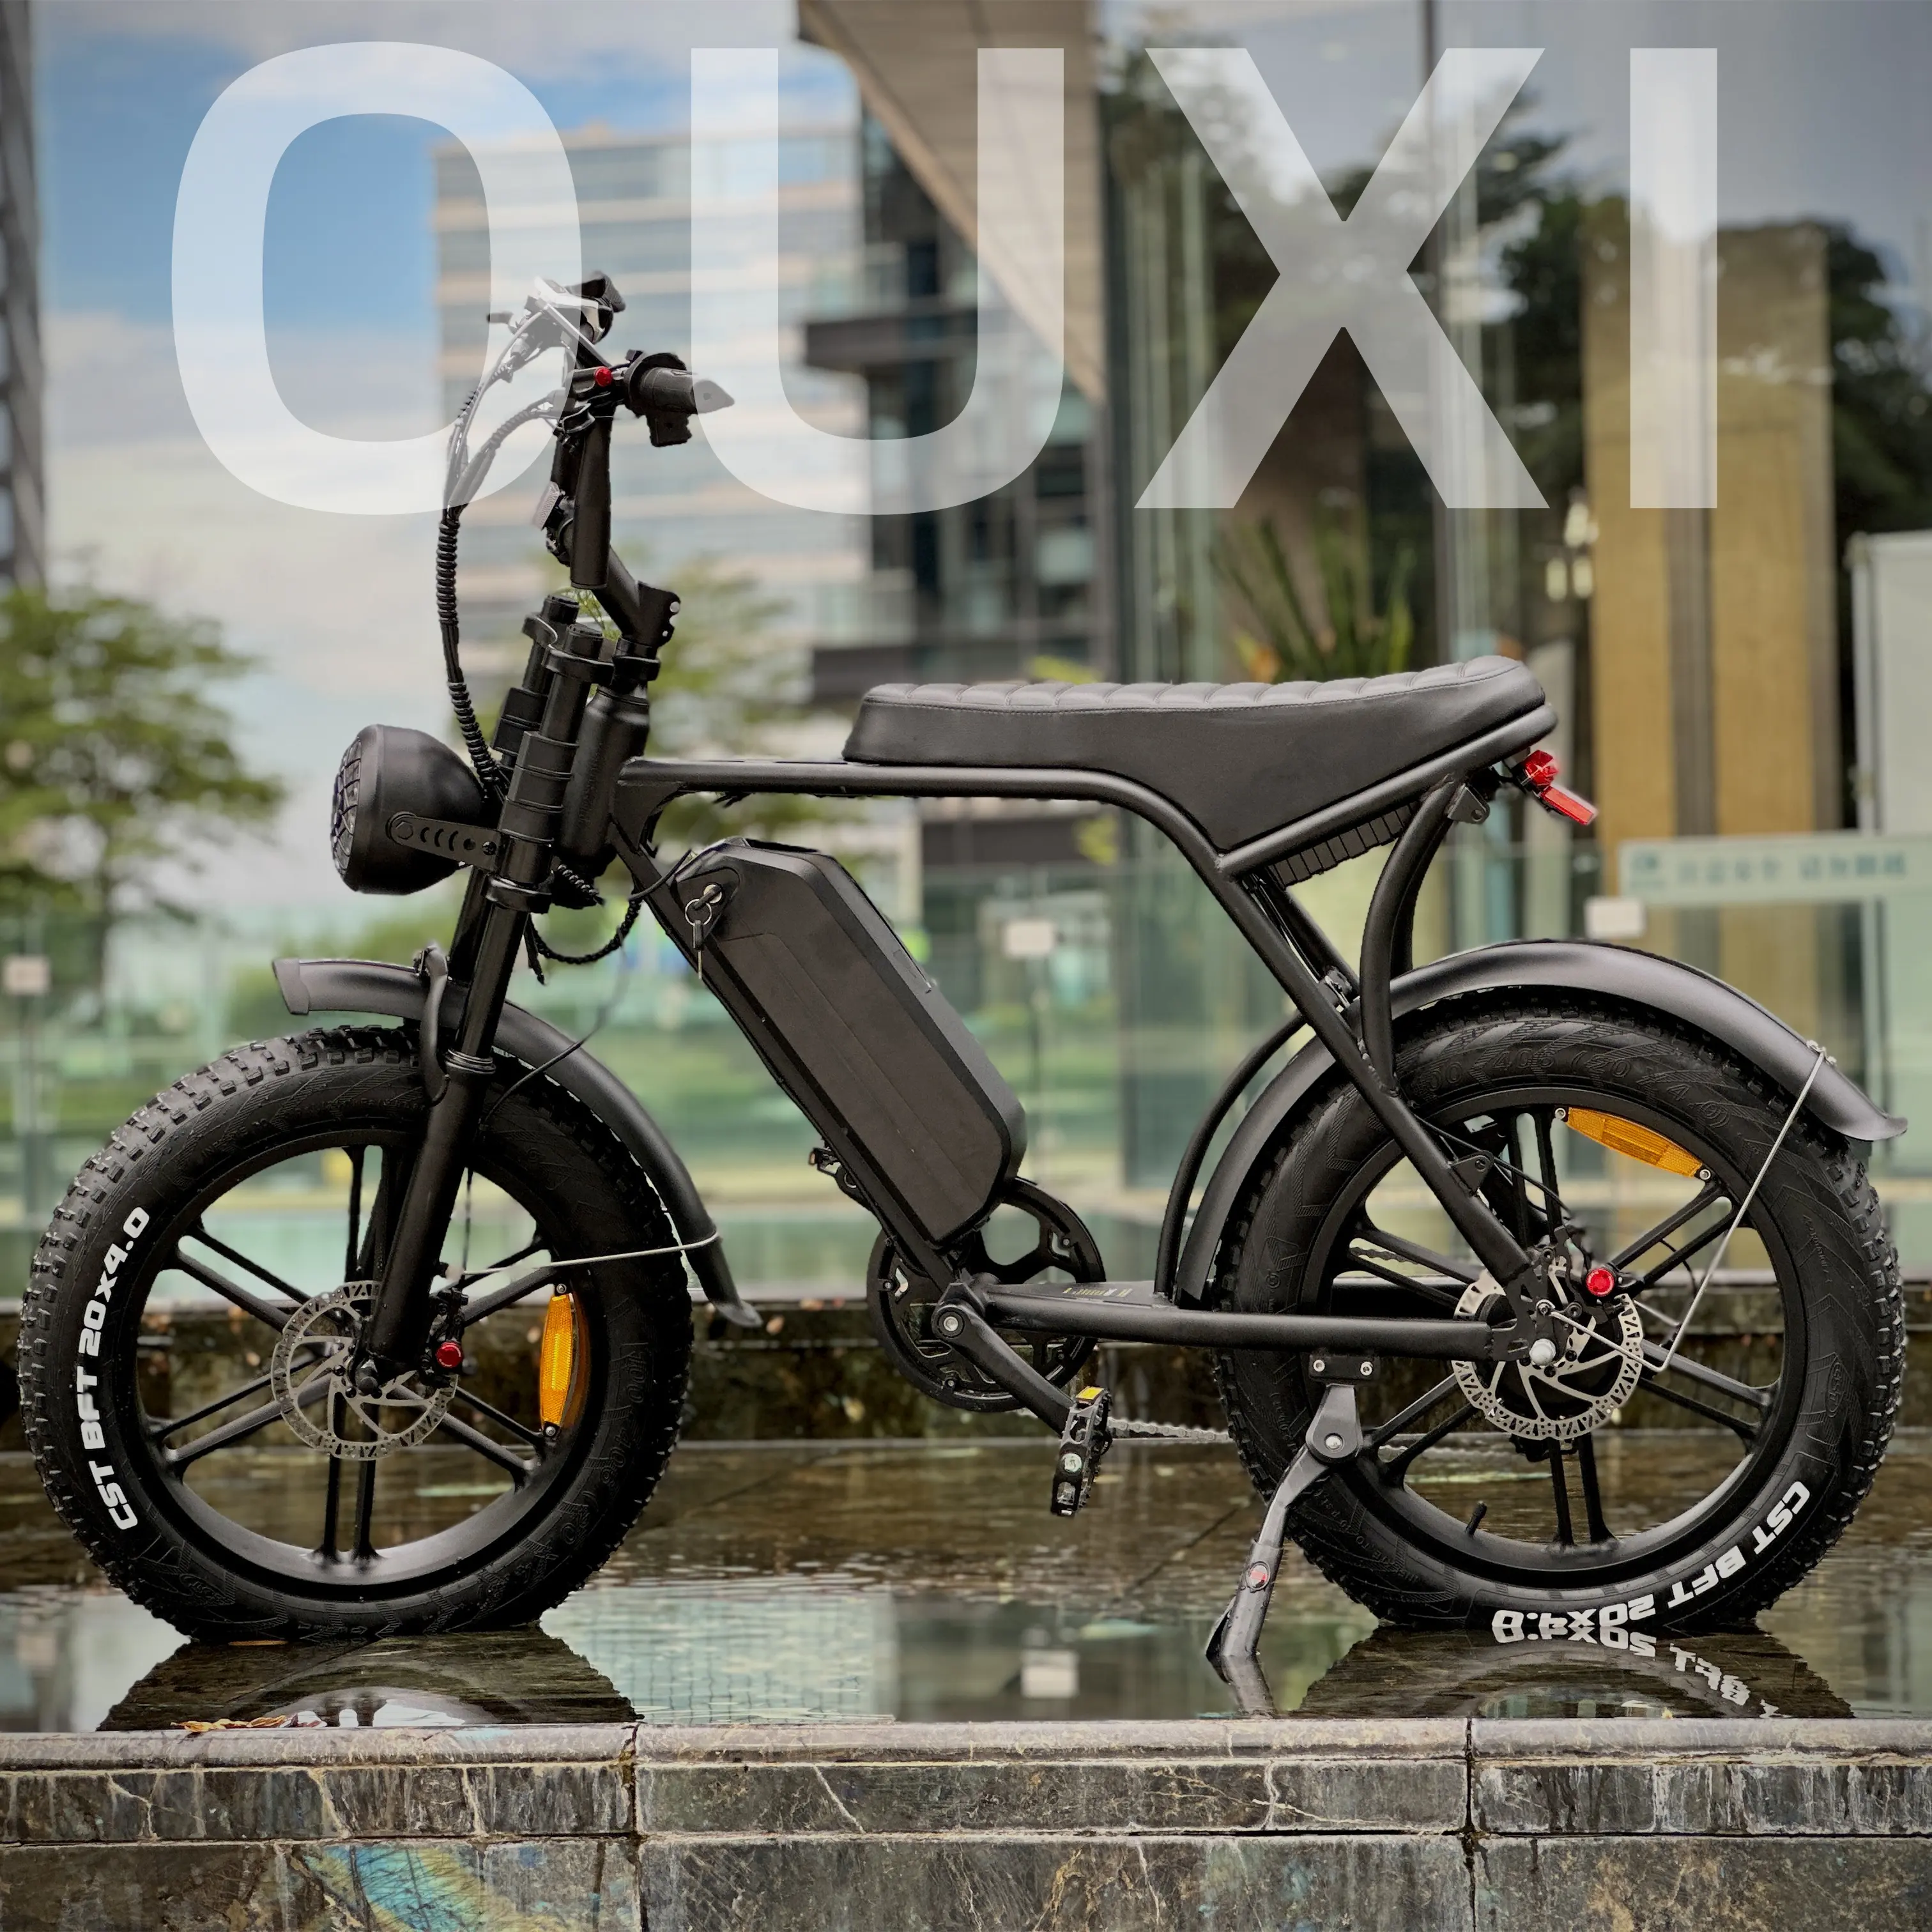 Originale OUXI V8 ebike electric fat tire bike elektrisch fatbike bici elettrica 1000W e-bike 48V fat bike